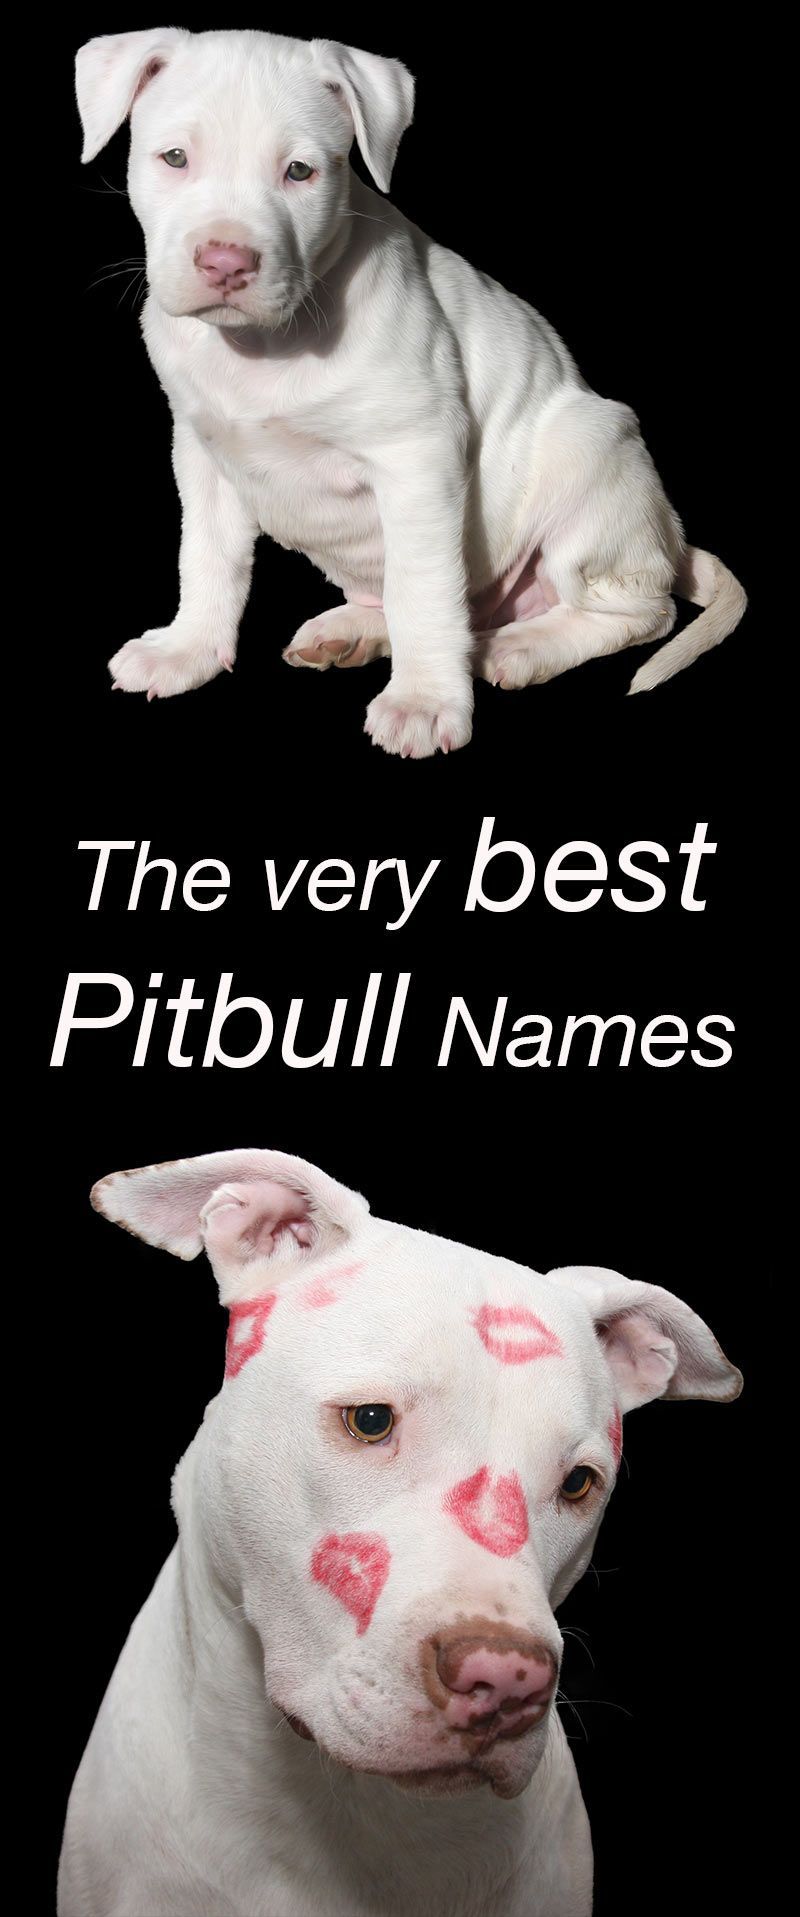 Les meilleurs noms Pitbull pour votre nouveau chiot